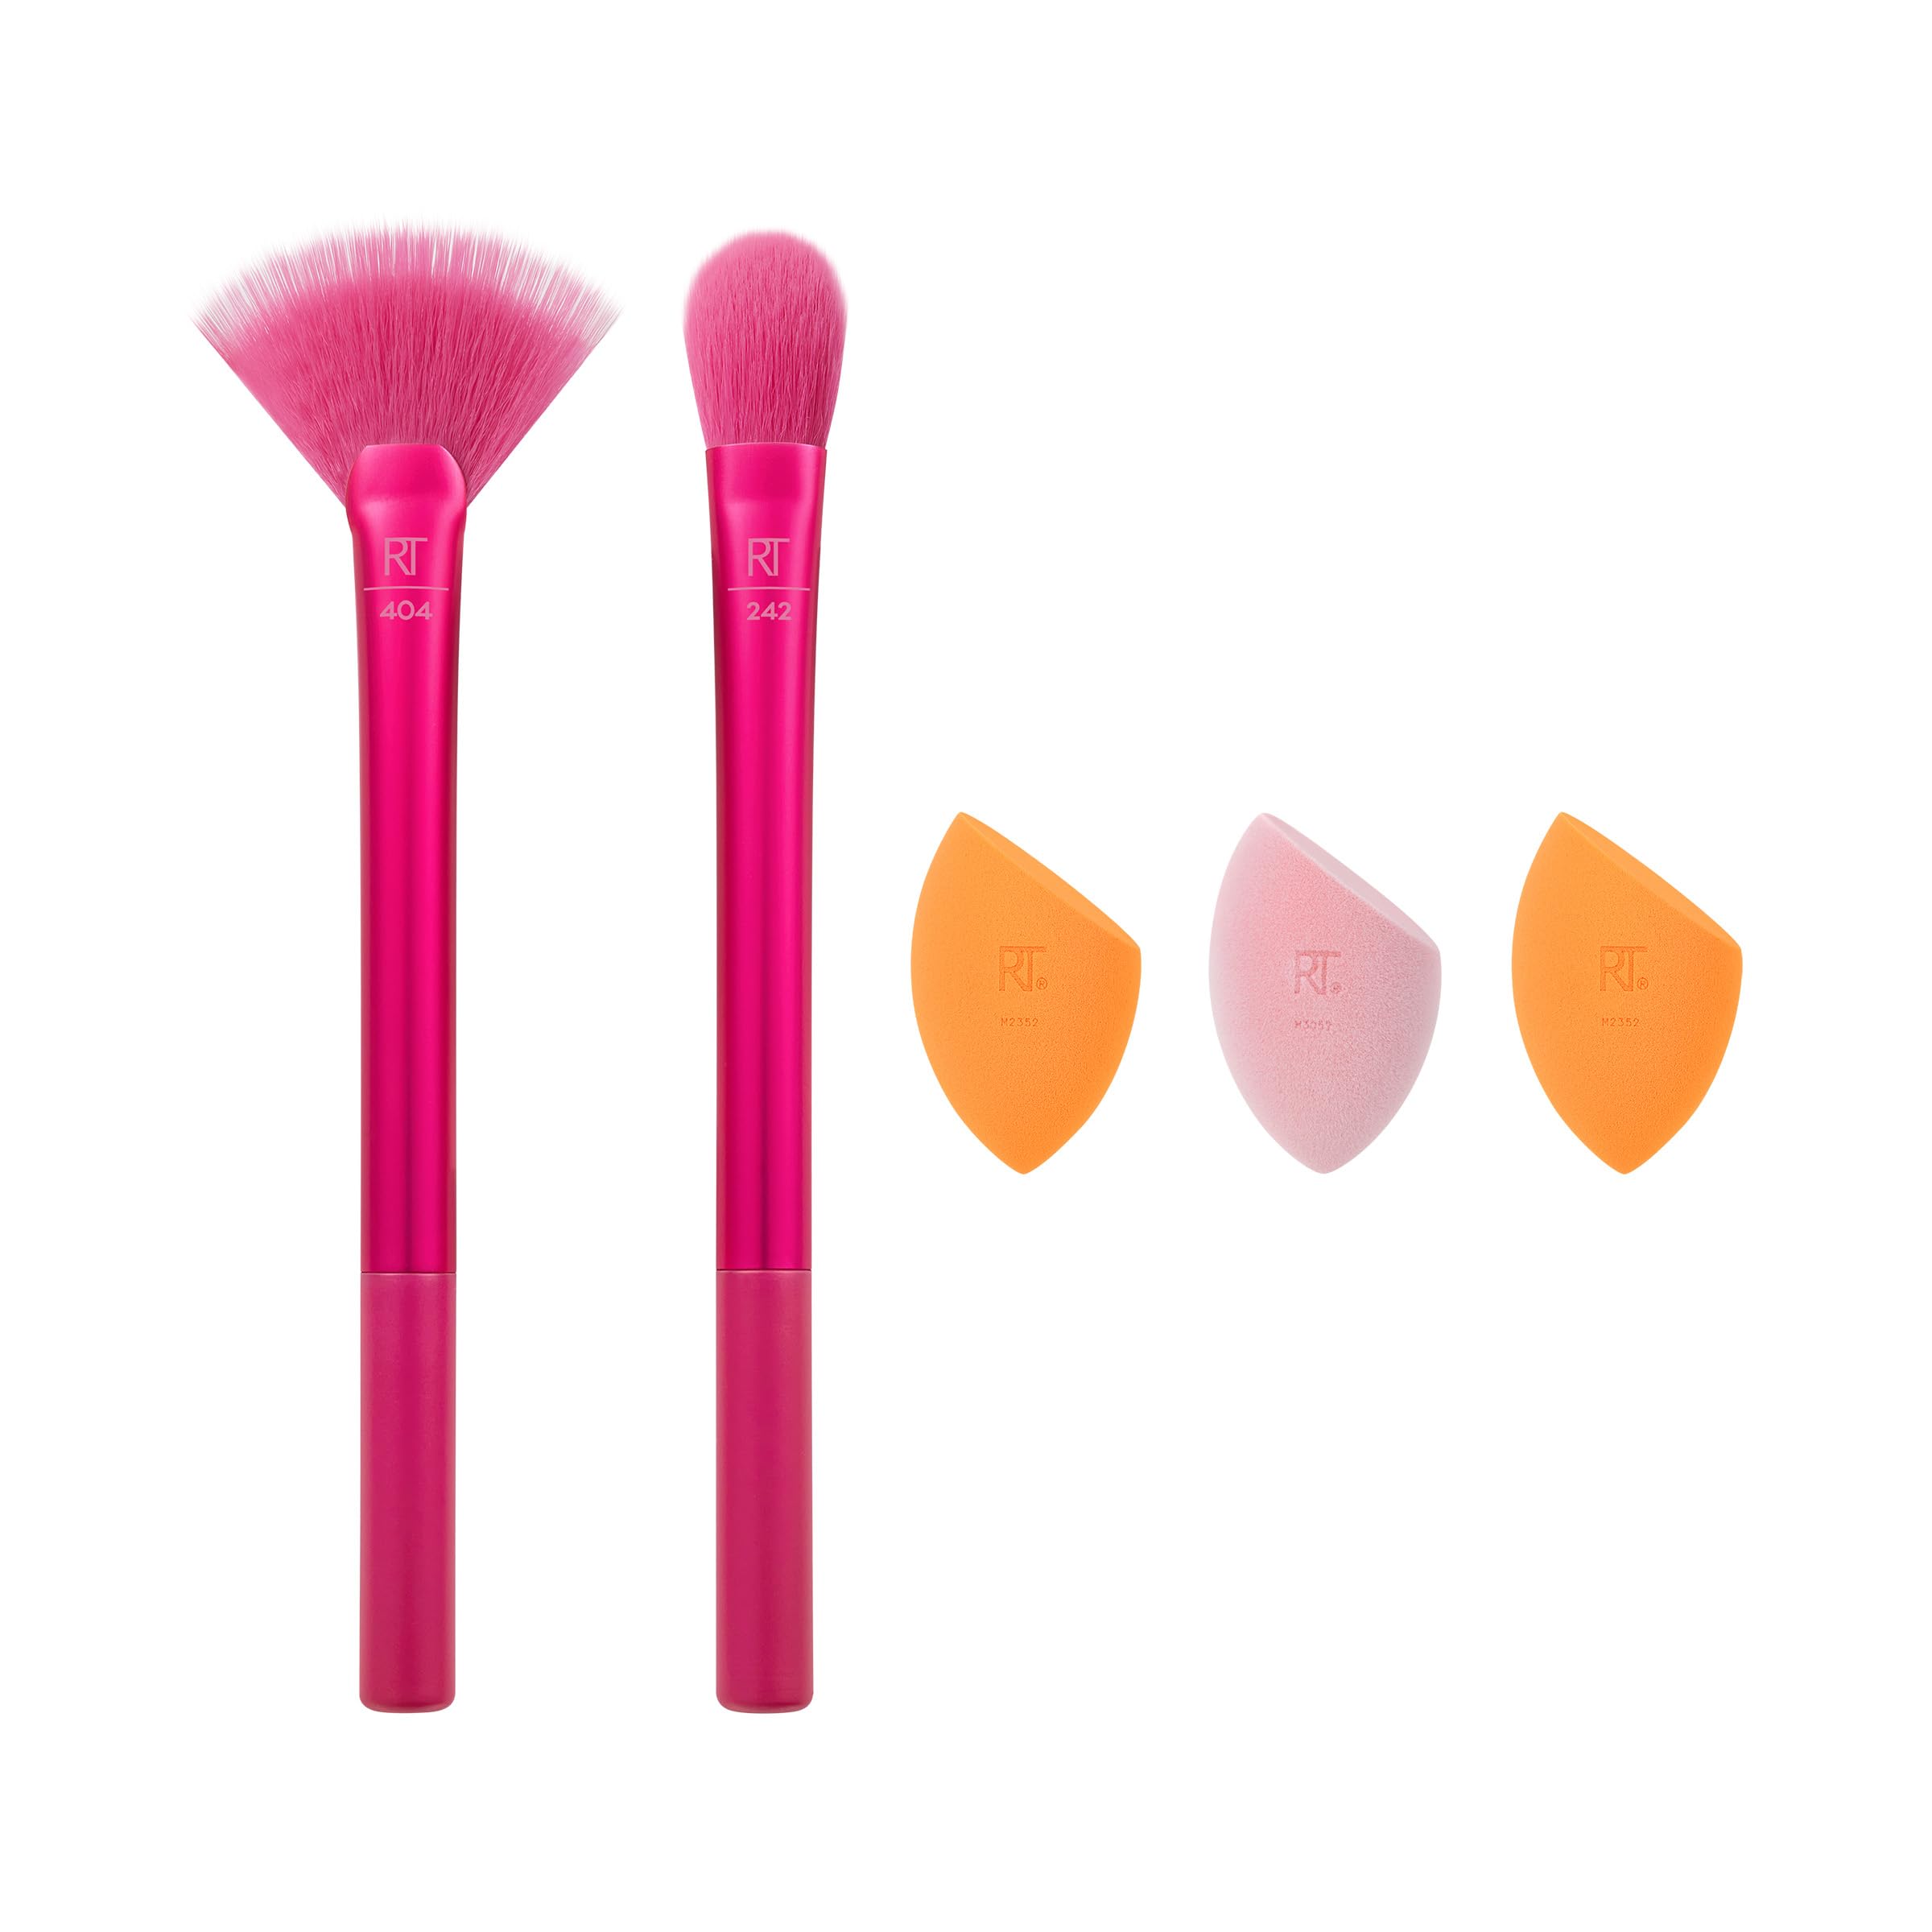 Real Techniques Limited Edition Starlite Nights Brush + Sponge Kit, Makeup Brush & Makeup Blending Sponge Set, For Concealer, Foundation, & Powder, For Matte or Dewy Skin, 5 Piece Gift Set